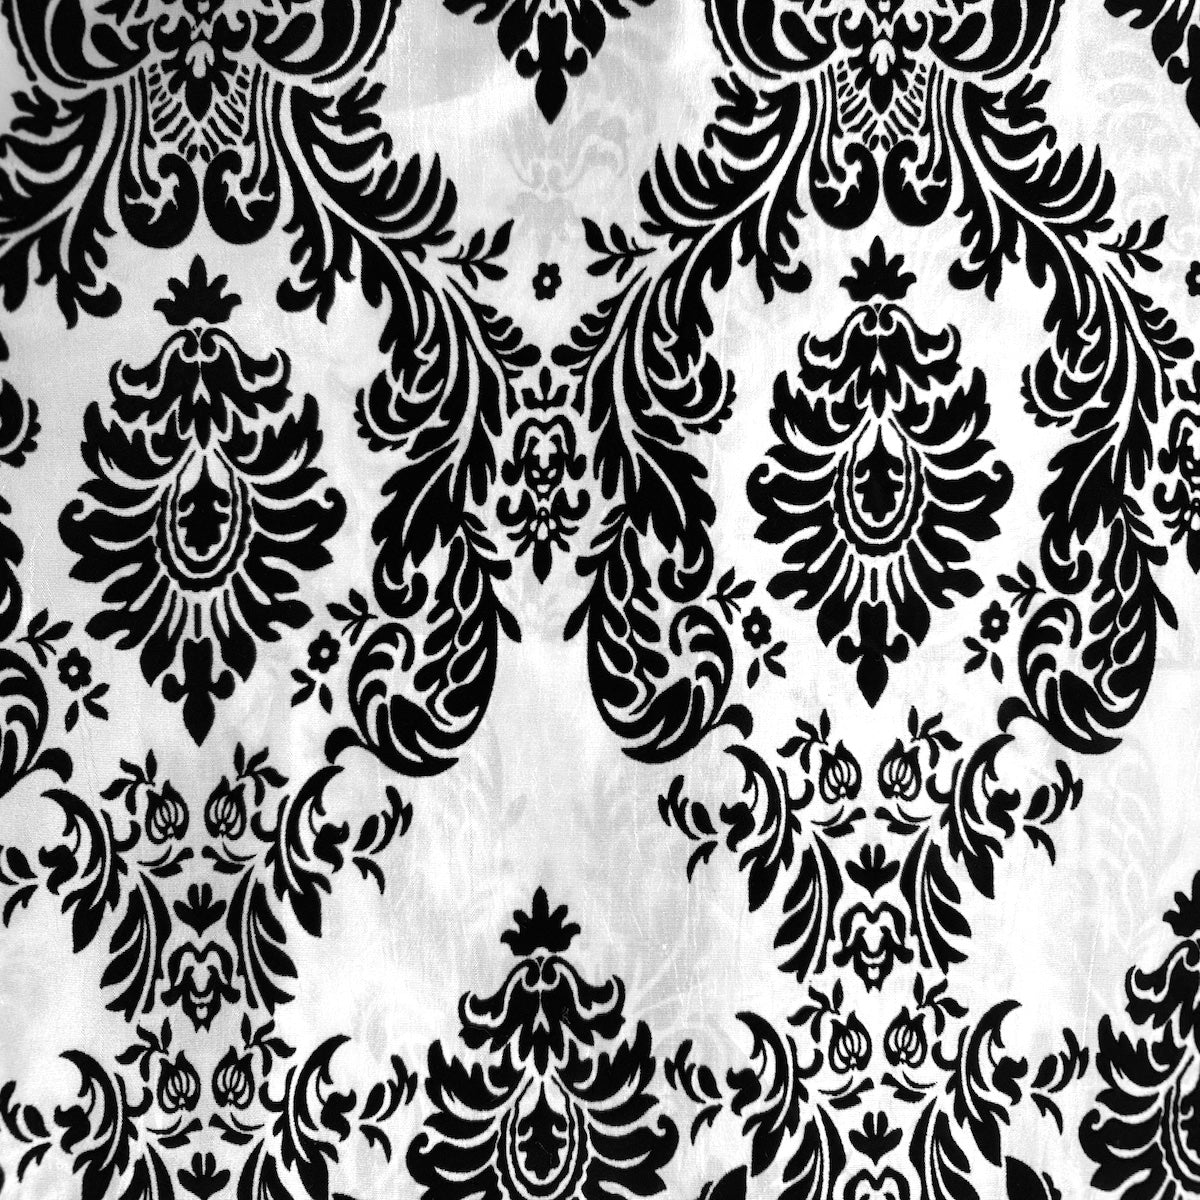 White | Black Damask Flocking Velvet Taffeta Fabric